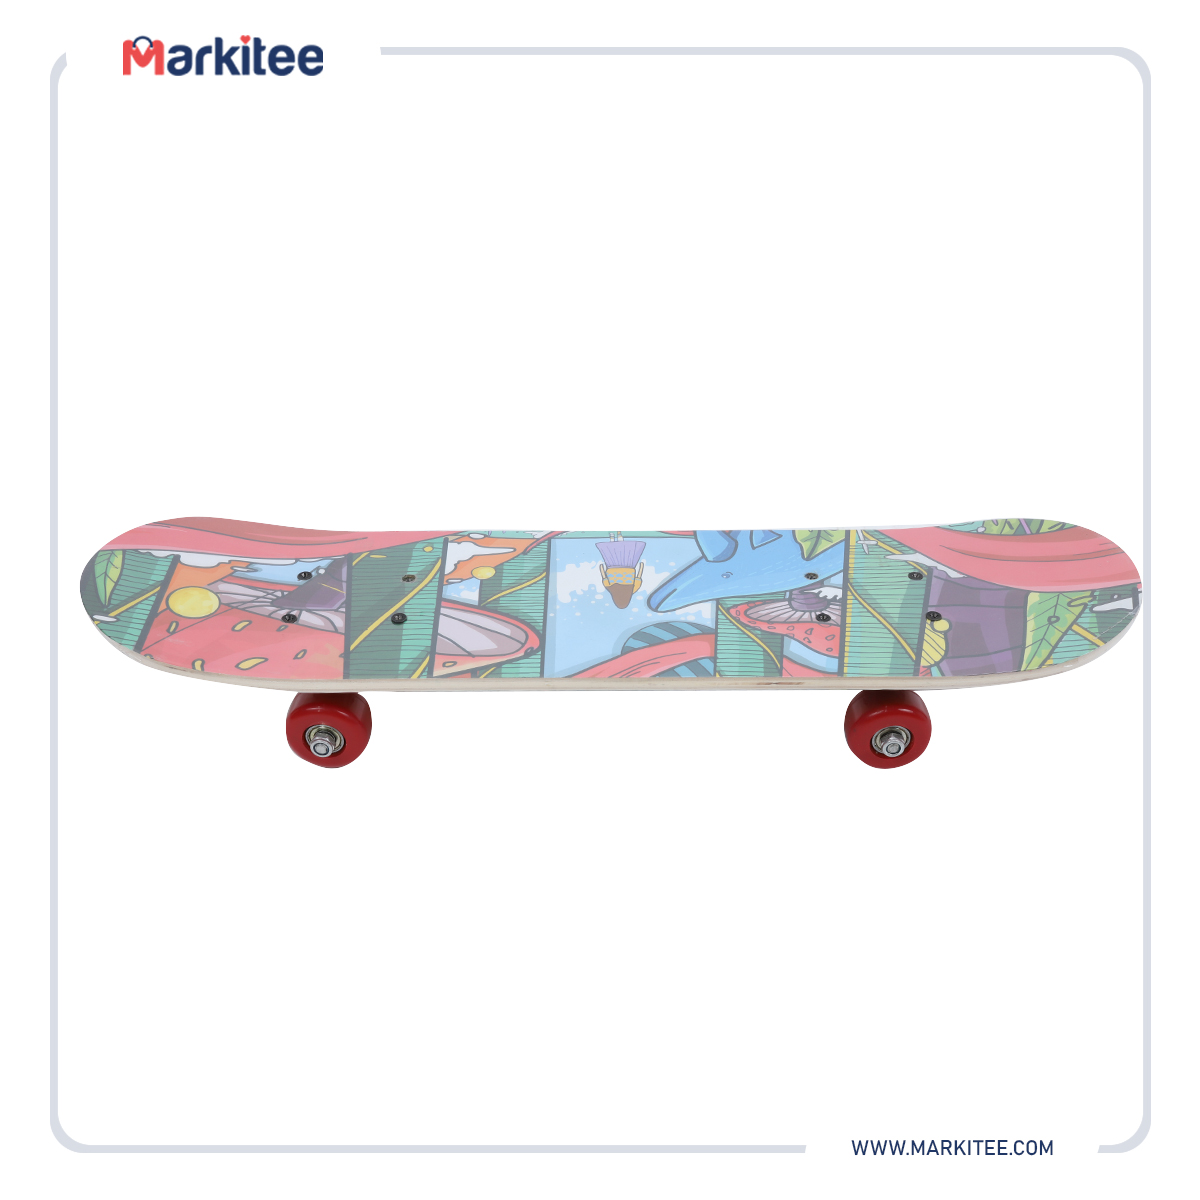 ماركيتي-markitee-20220516020151210_Markitee-Toys-TY559-3(4).jpg